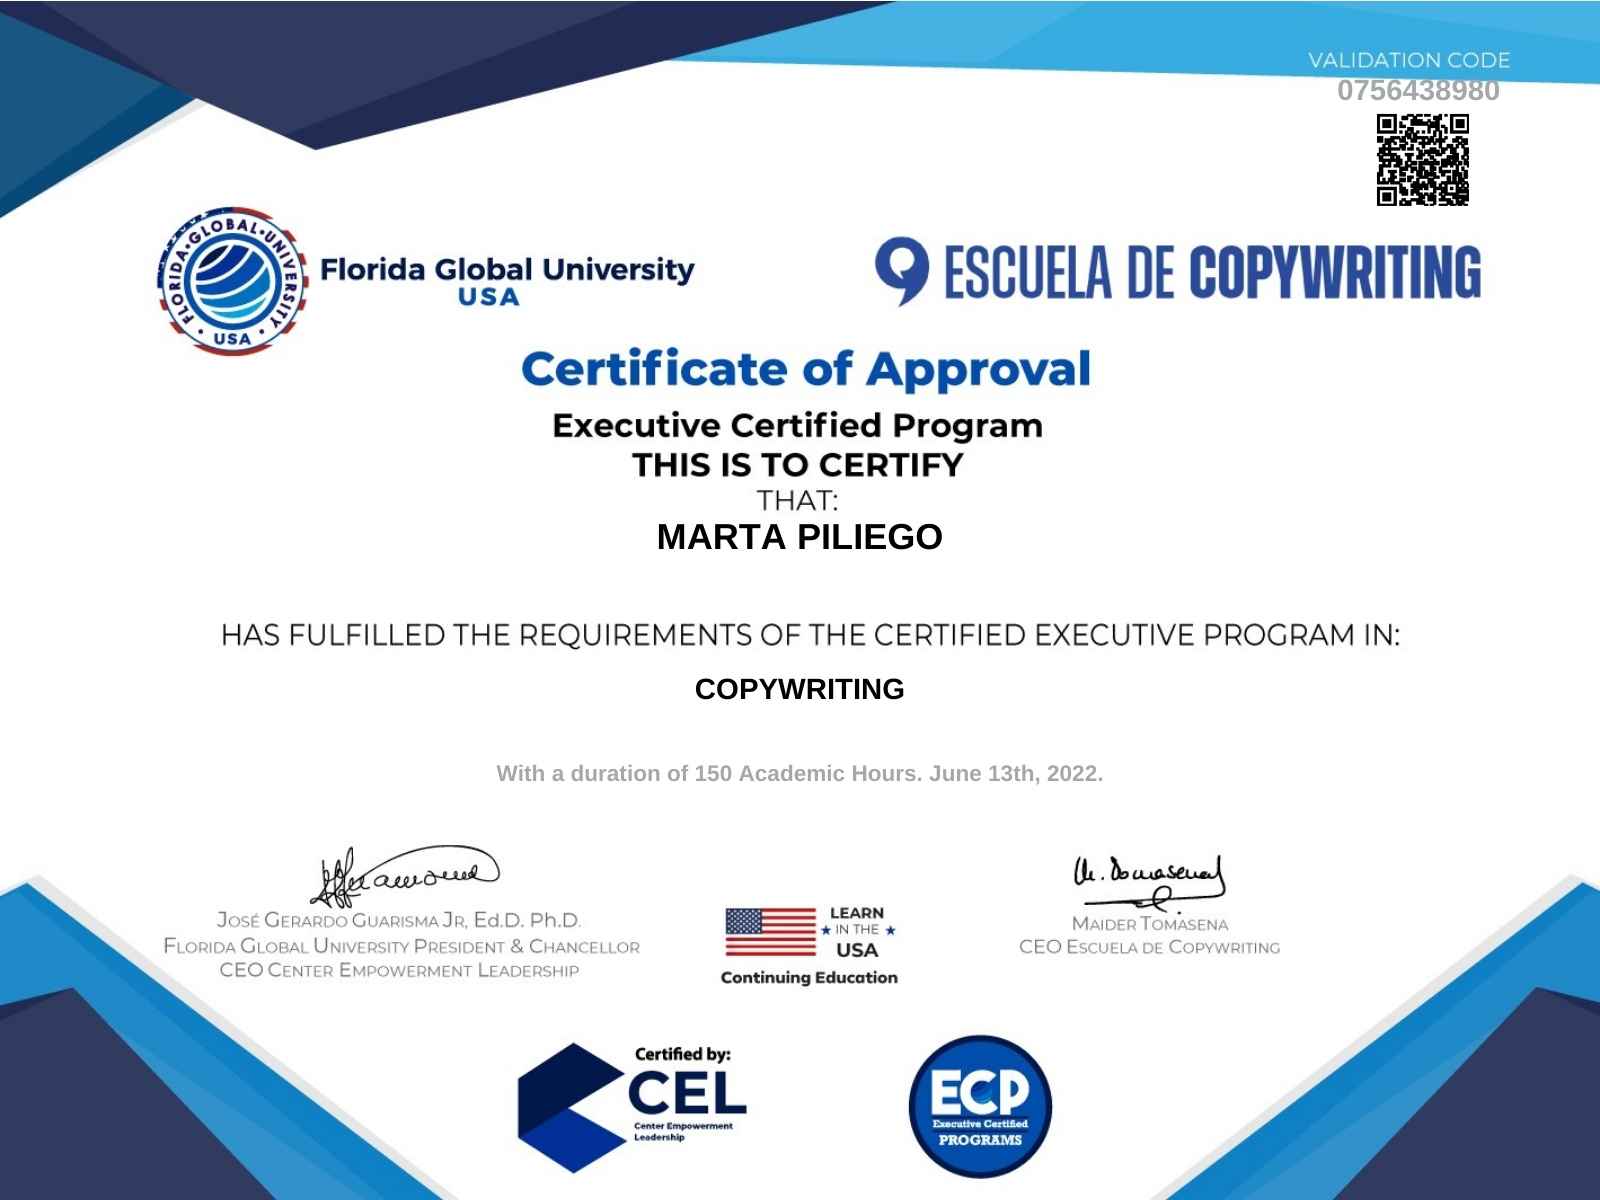 Certificación Copywriting Marta Piliego - Escuela de Copywriting de Maider Tomasena